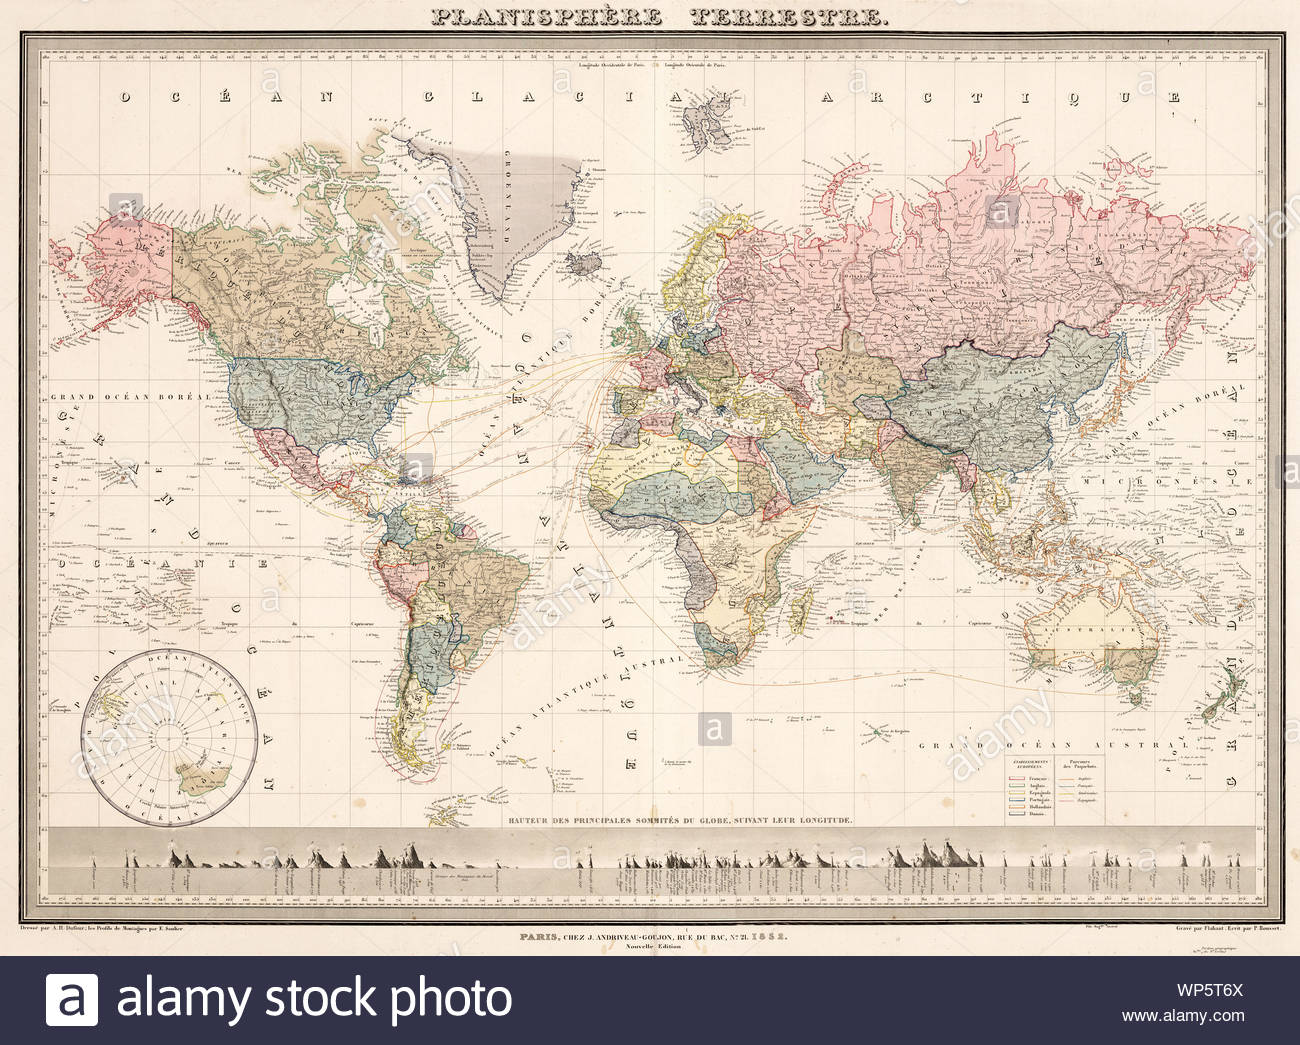 Digital Old World Map Printable Download Vintage World Map